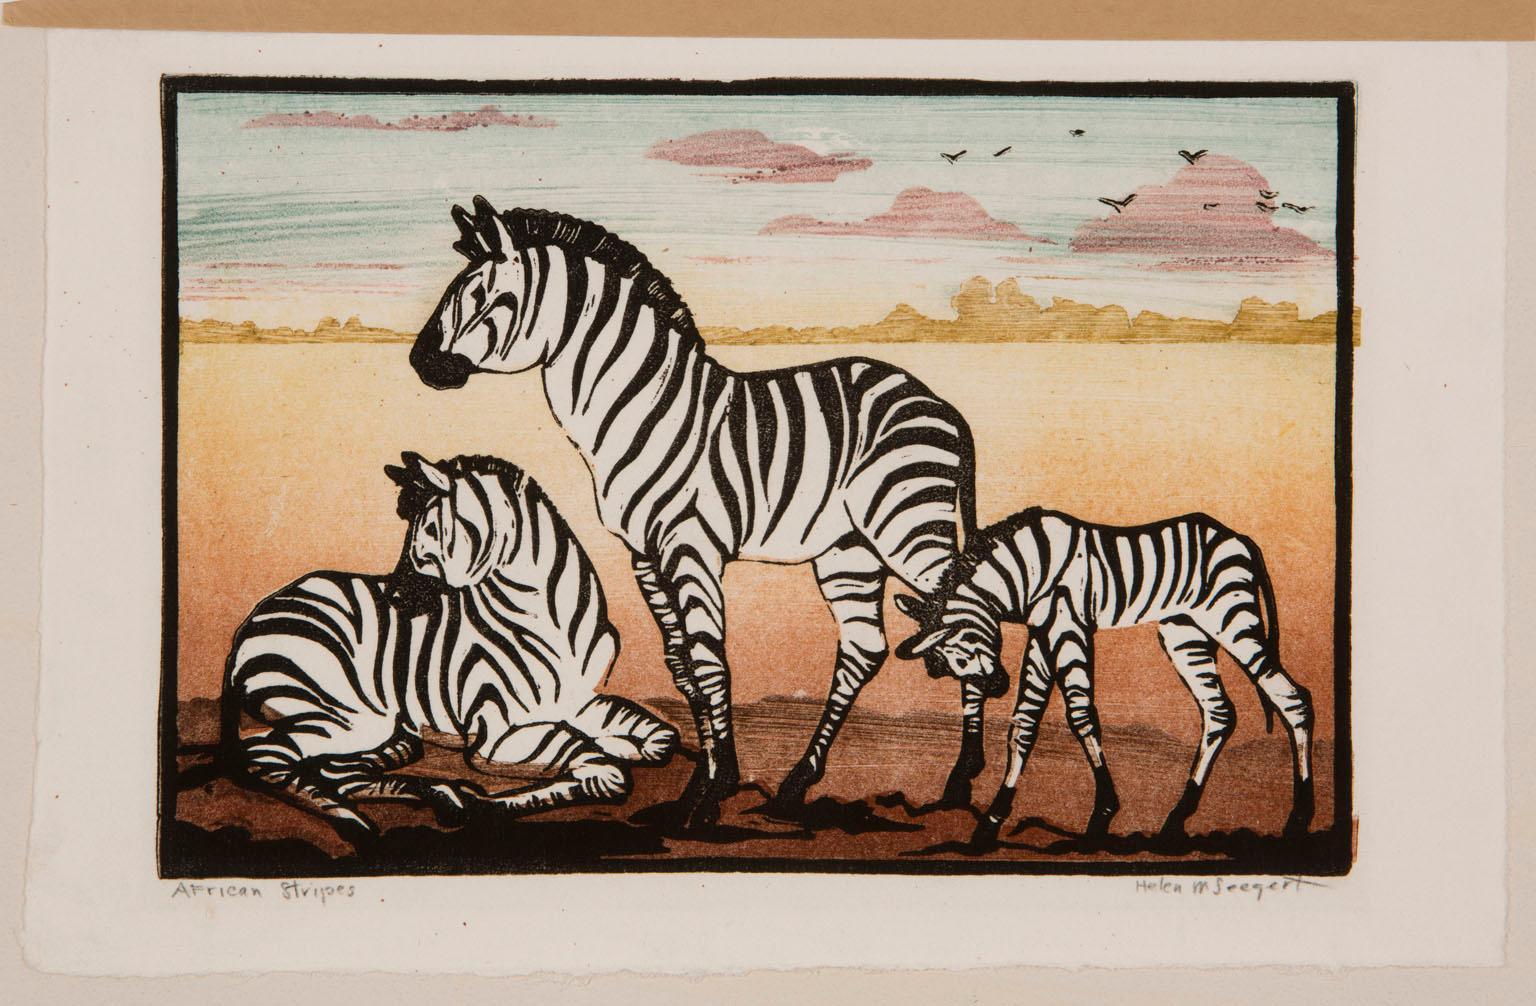 African Stripes - Print by Helen M. Seegert